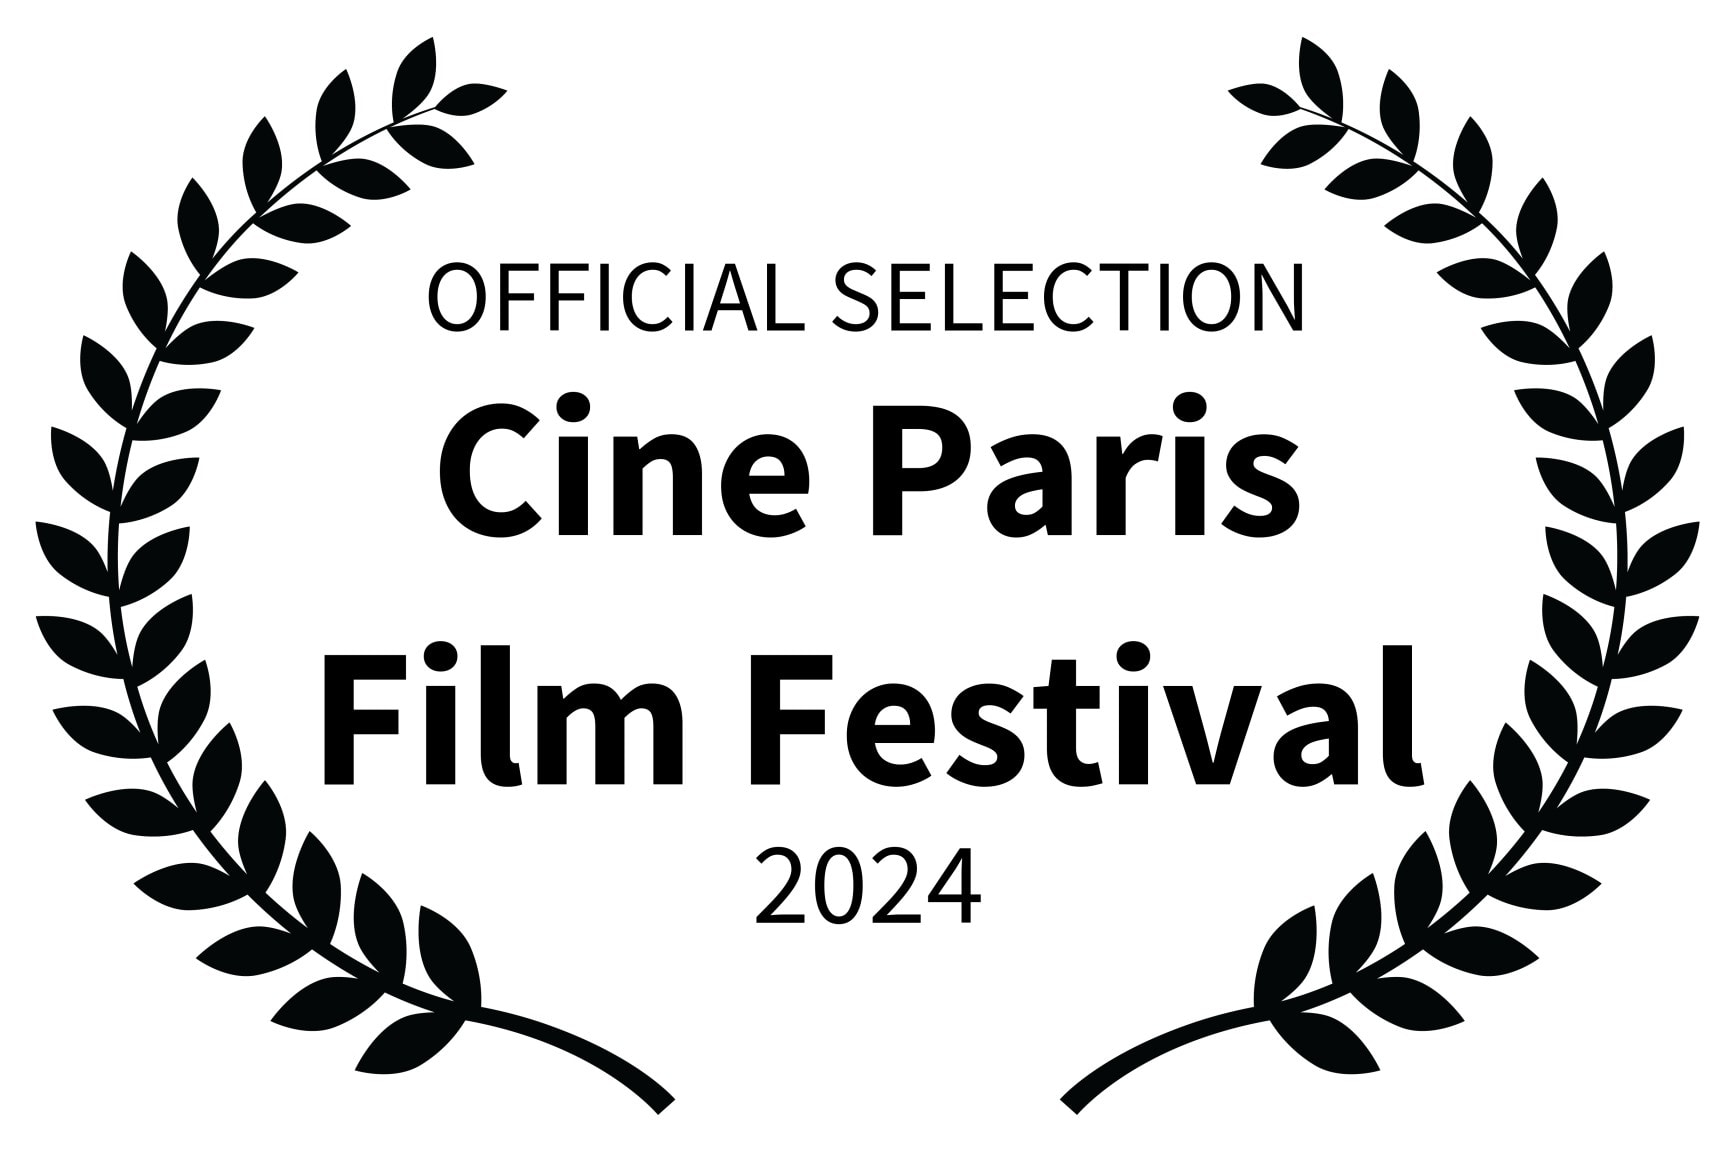 OFFICIAL SELECTION - Cine Paris Film Festival - 2024